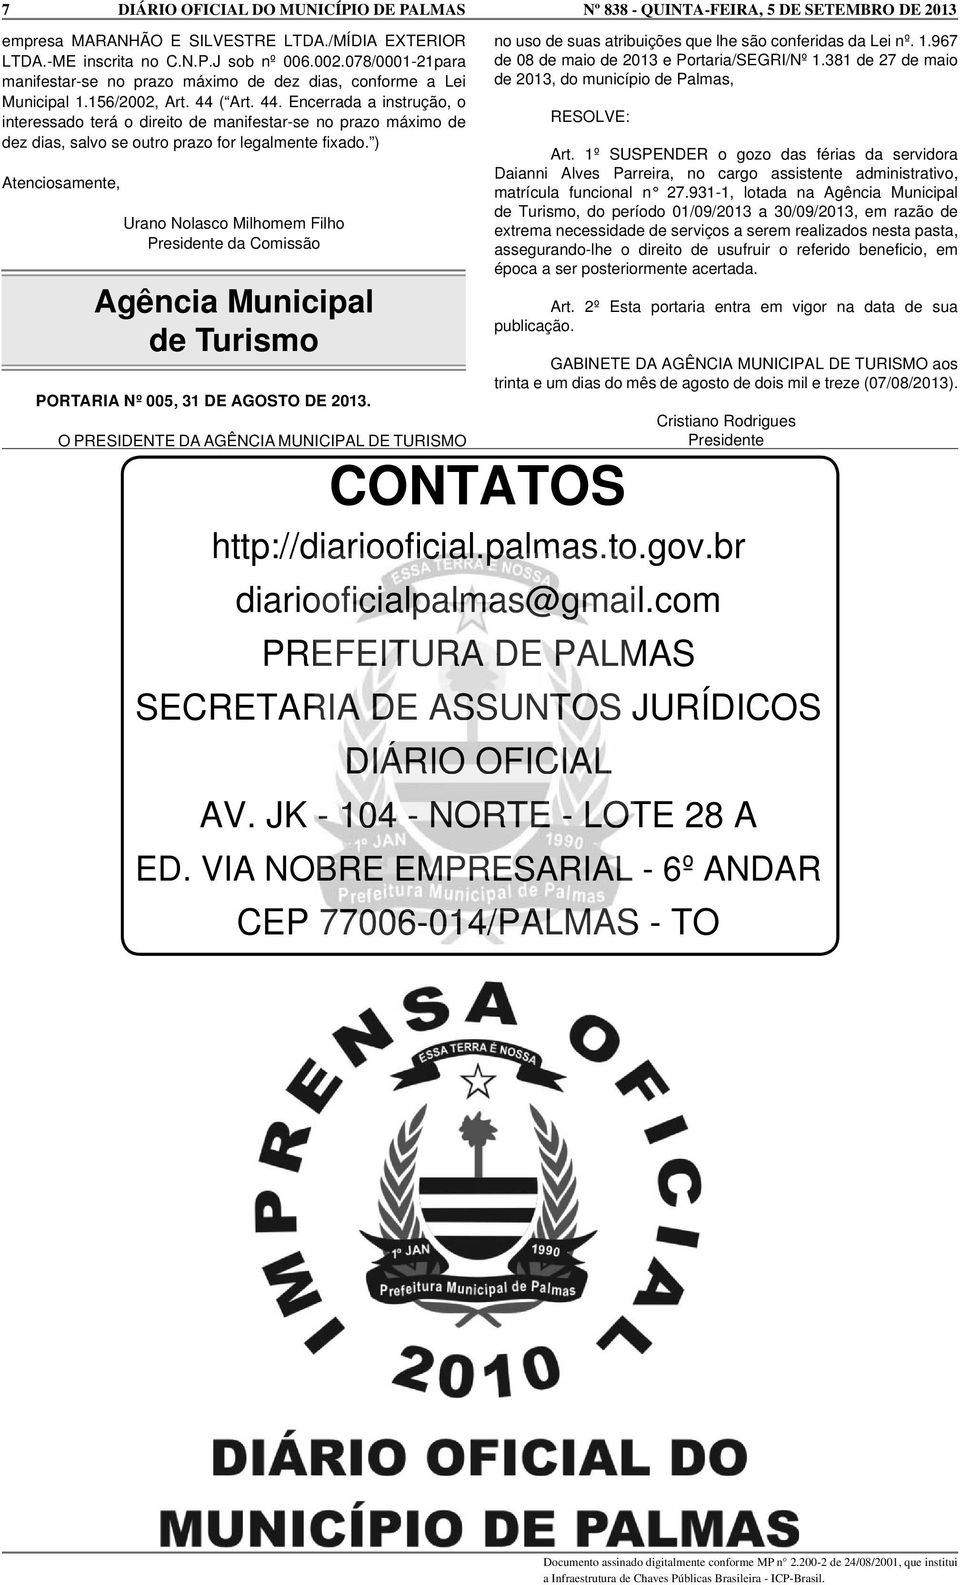 ) Atenciosamente, Urano Nolasco Milhomem Filho Presidente da Comissão Agência Municipal de Turismo PORTARIA Nº 005, 31 DE AGOSTO DE 2013.